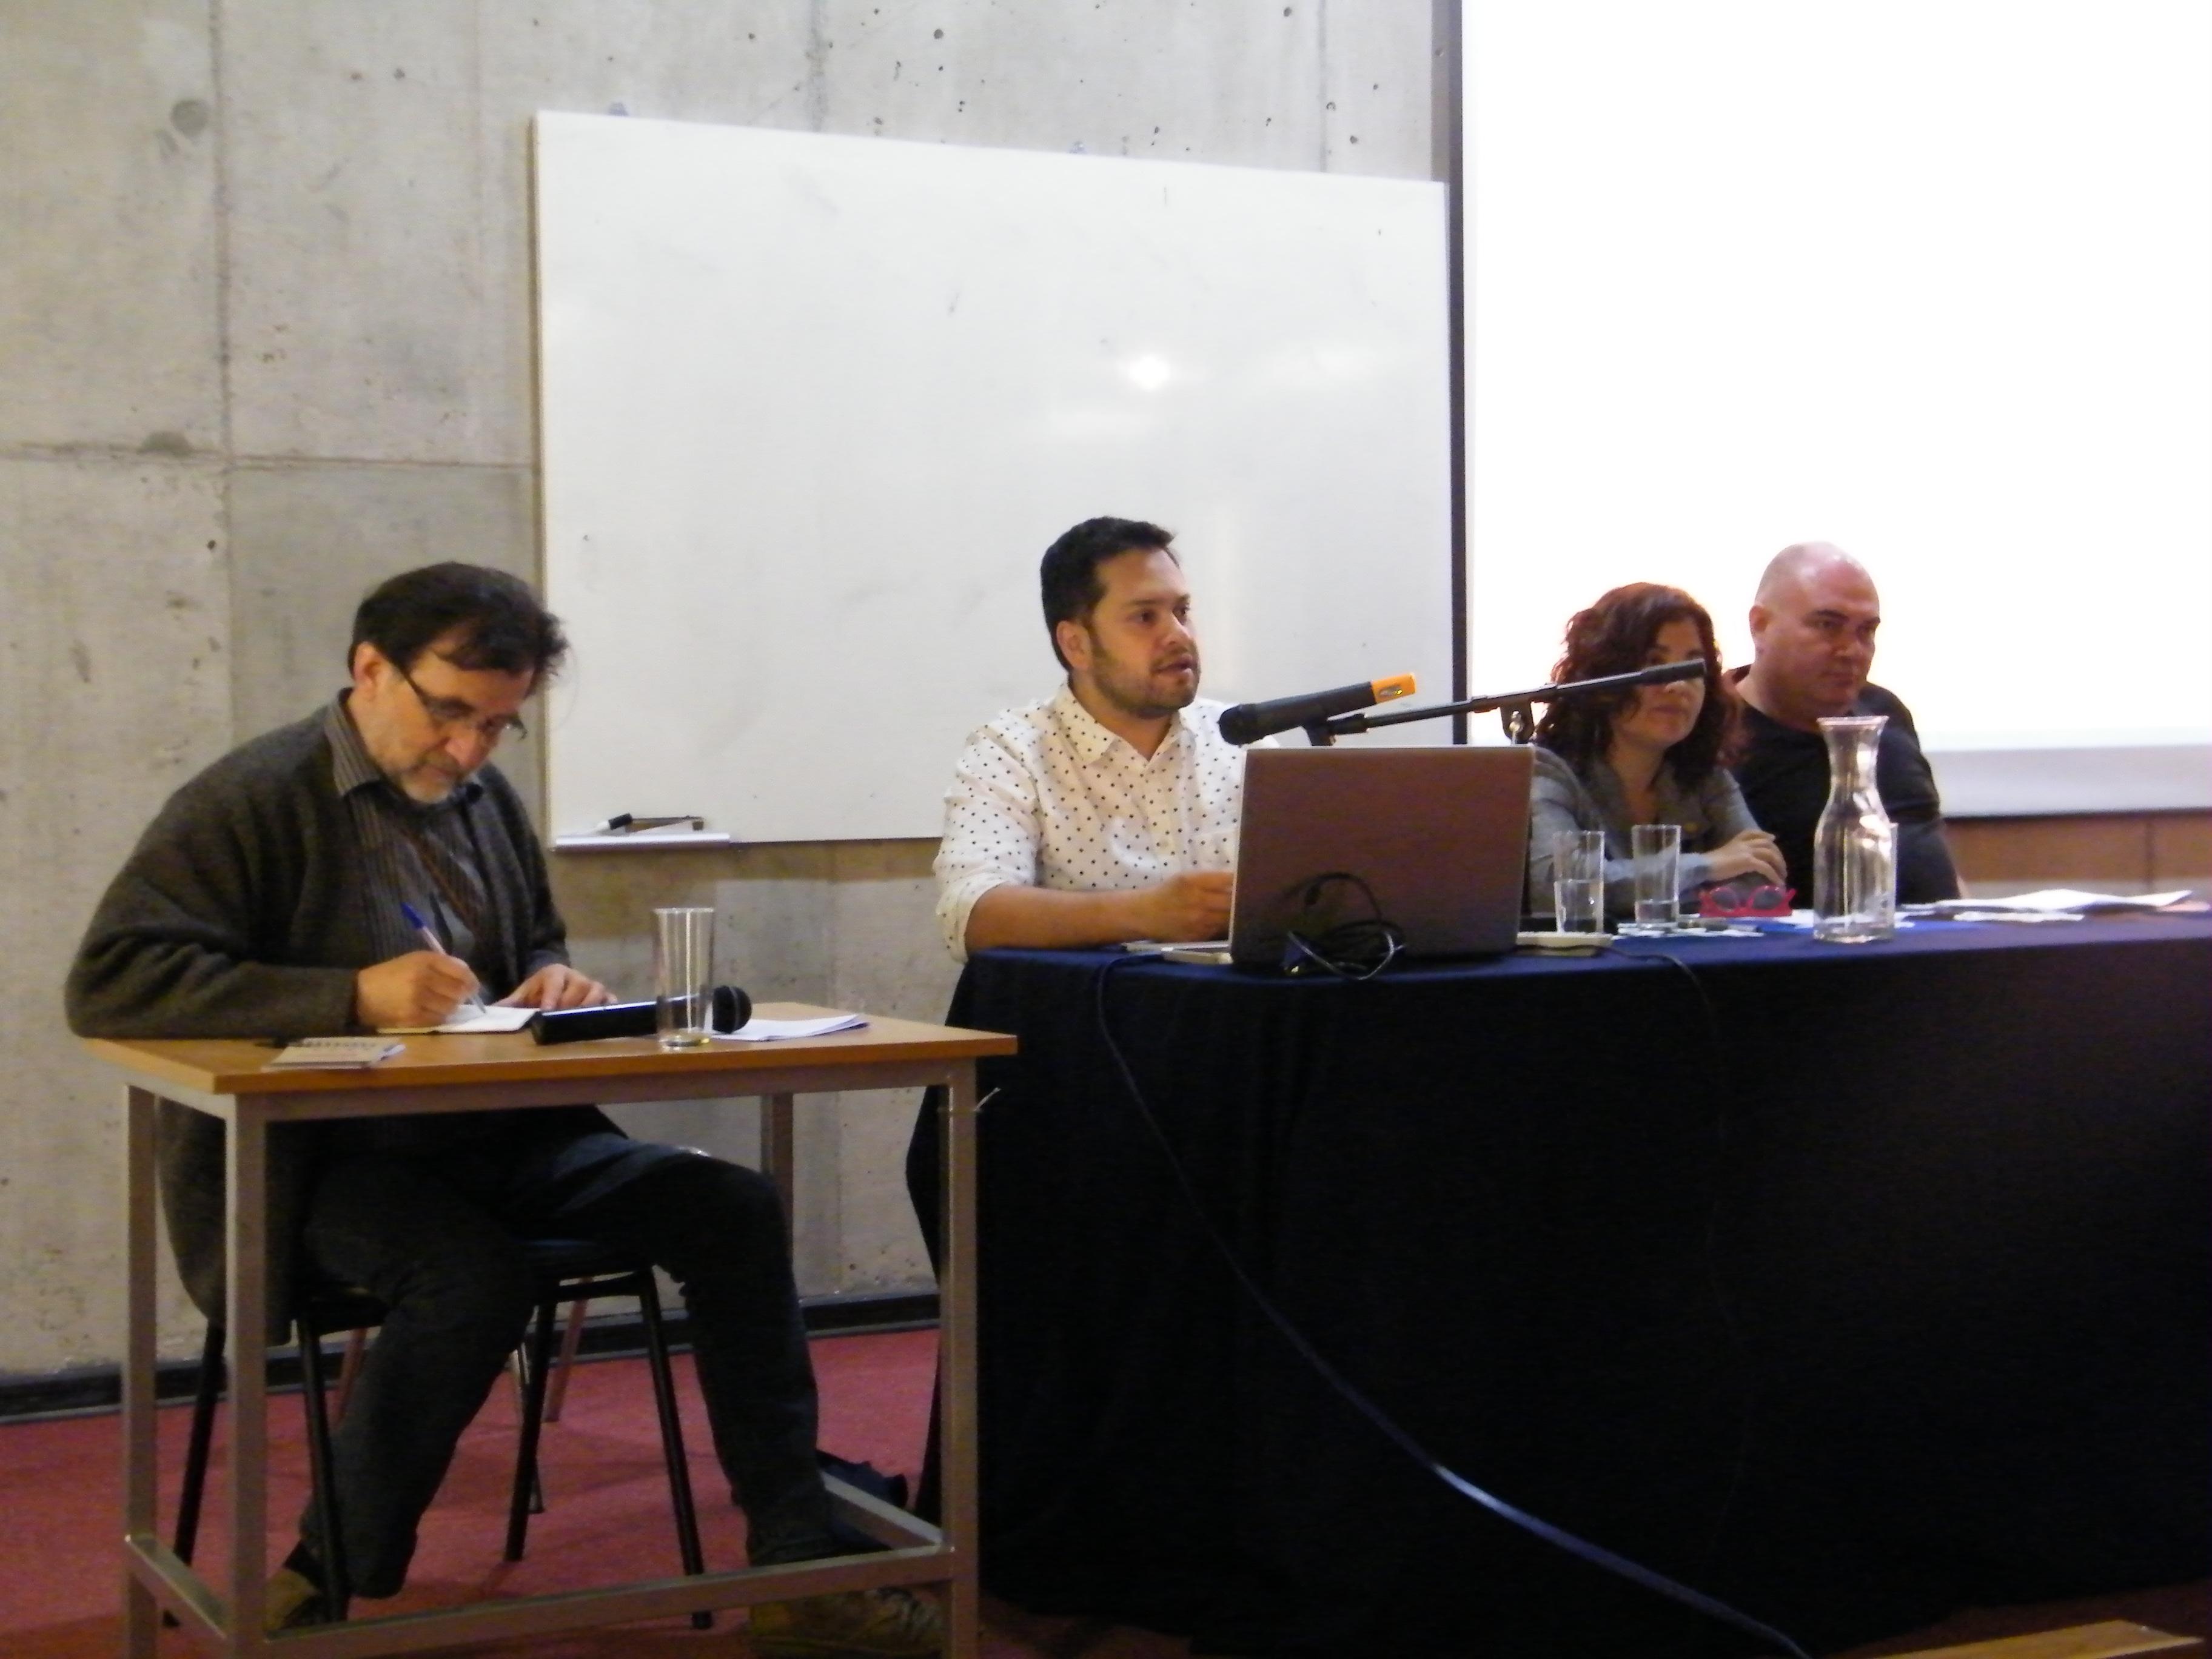 Profesores Max Aguirre y Rodrigo Vera participaron de la mesa sobre perspectivas latinoamericanas para la teoría e historia.